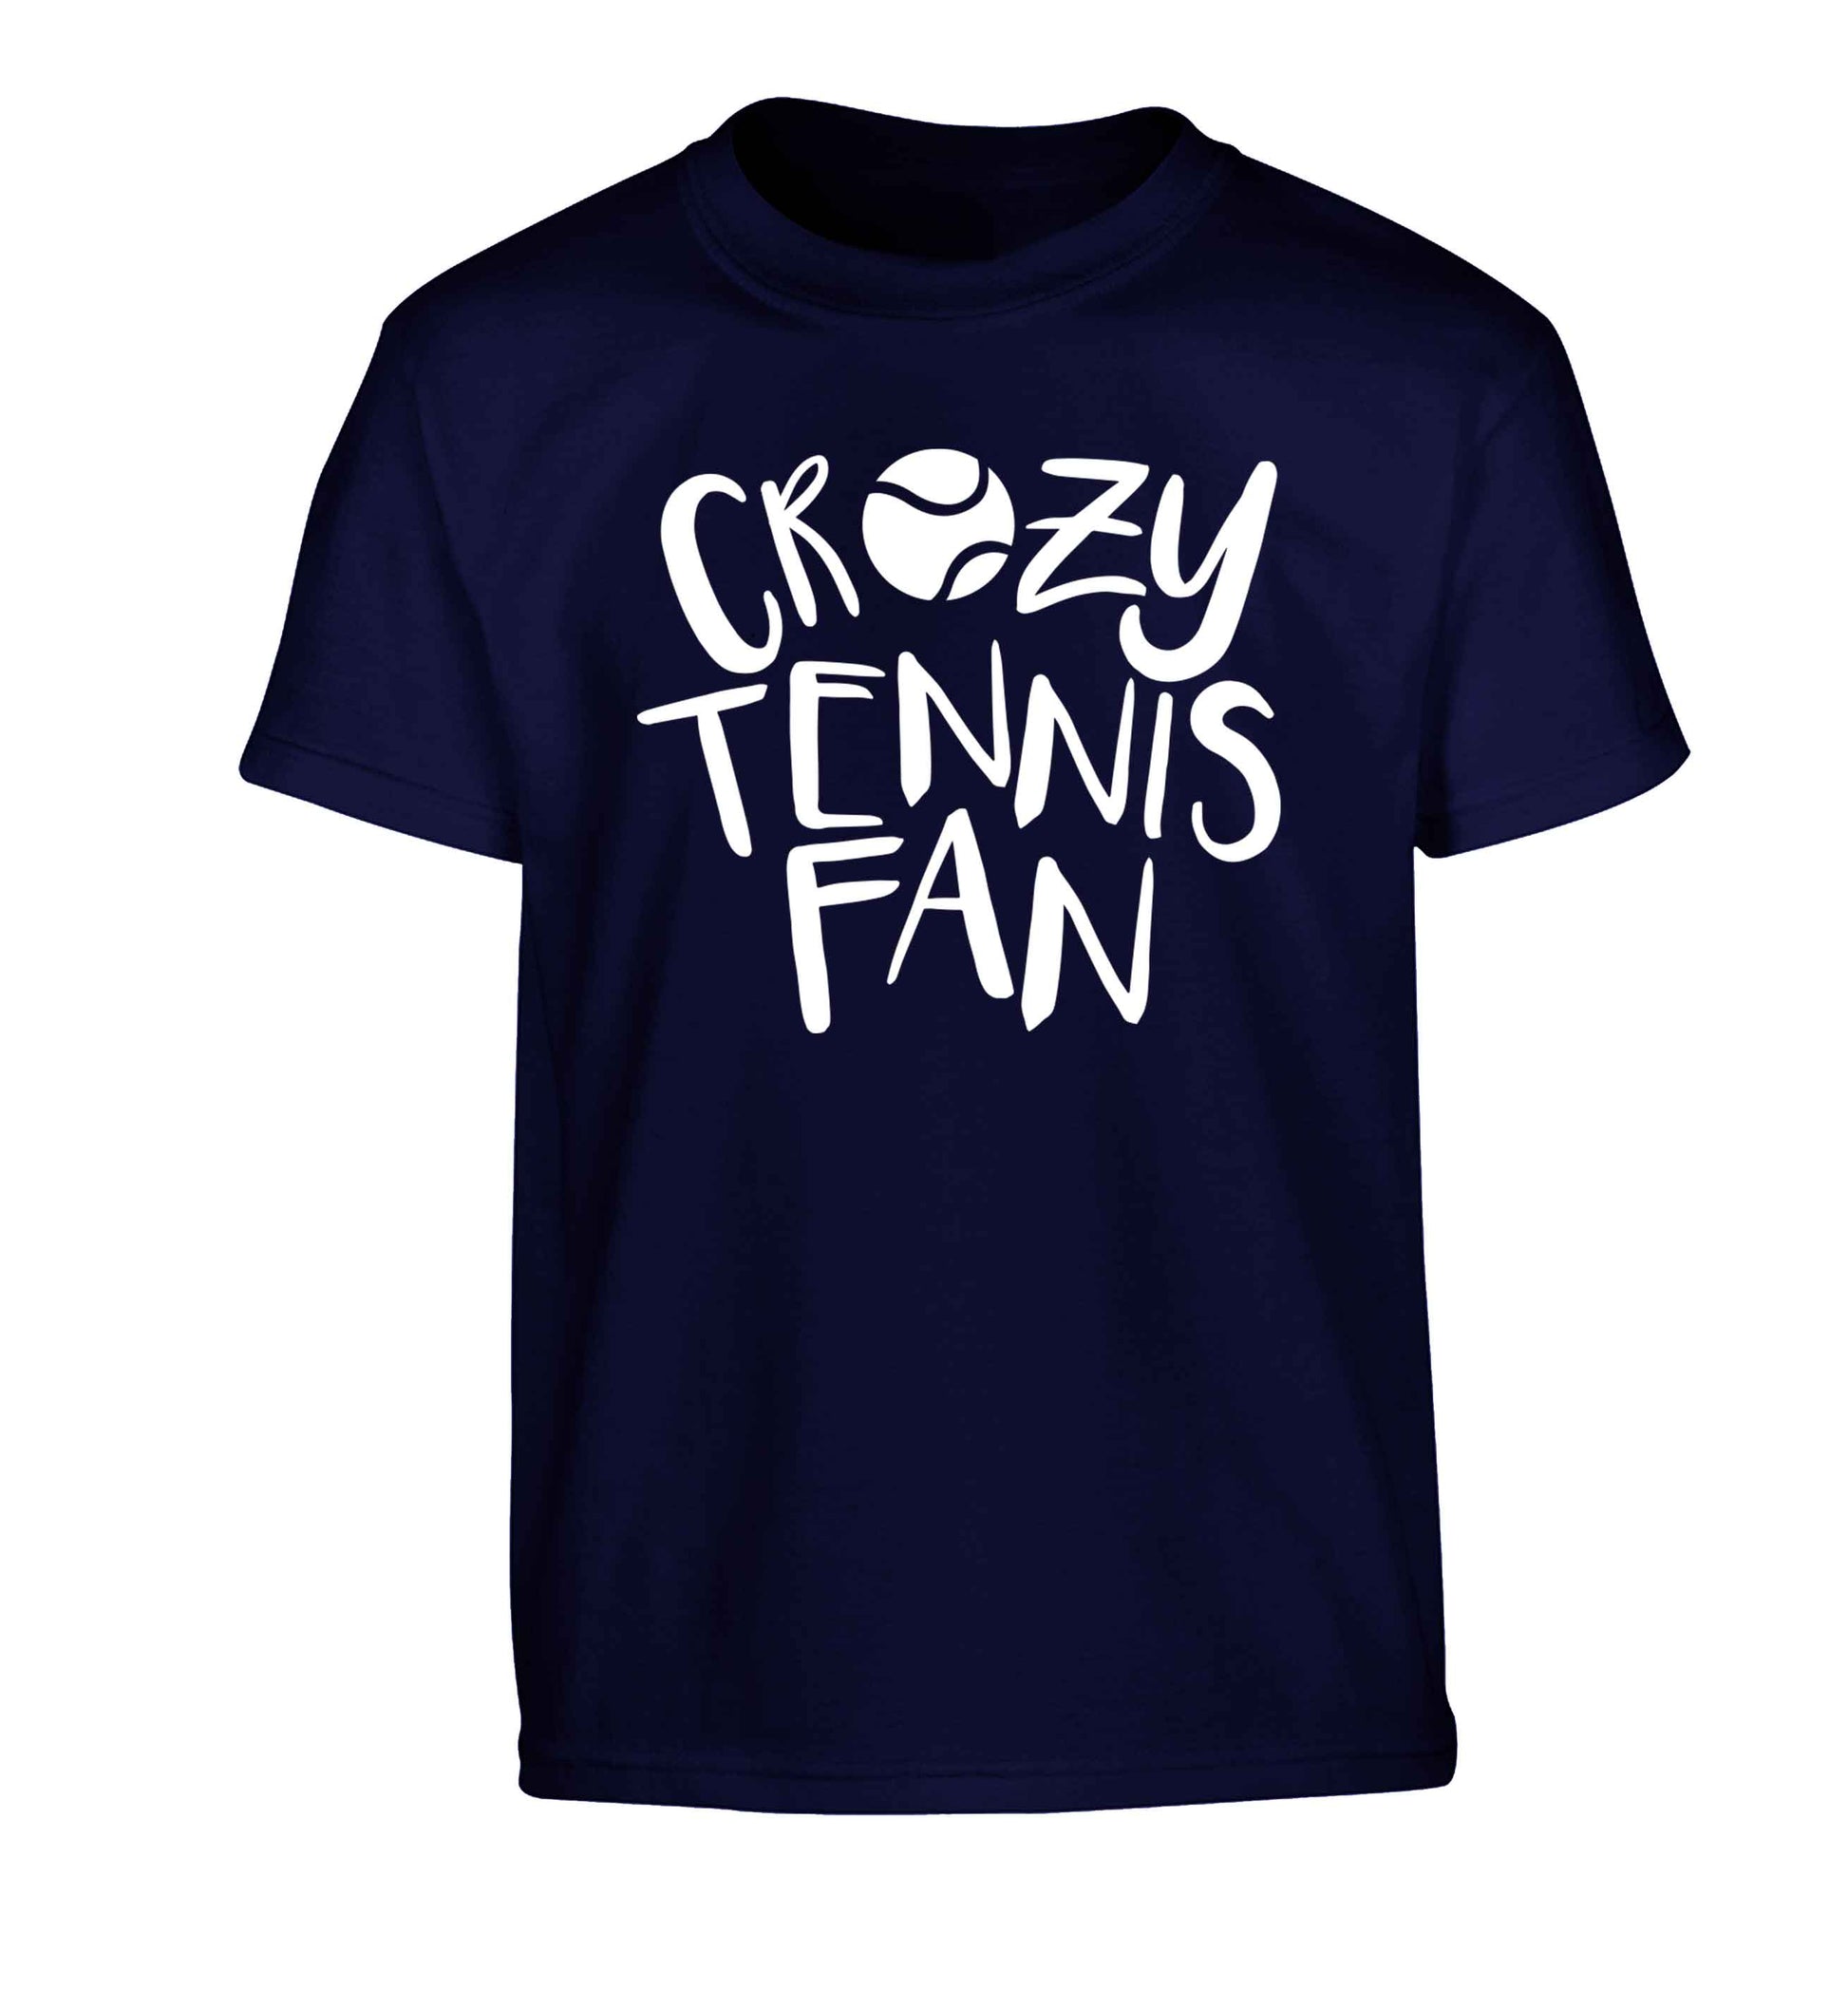 Crazy tennis fan Children's navy Tshirt 12-13 Years